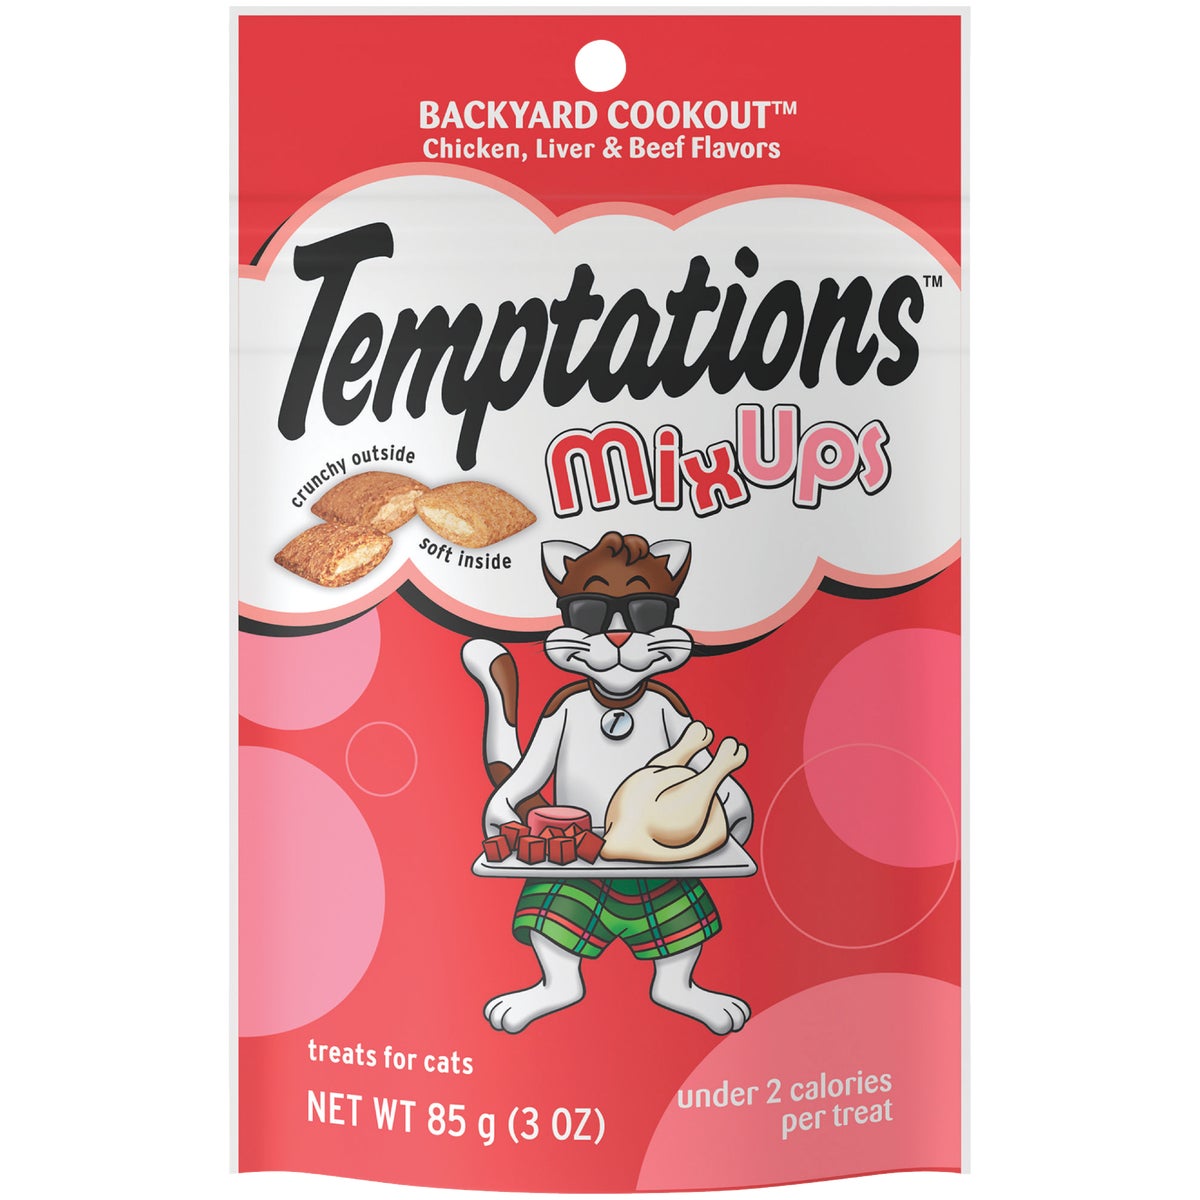 Temptations Mix Ups Backyard Cookout 3 Oz. Cat Treats